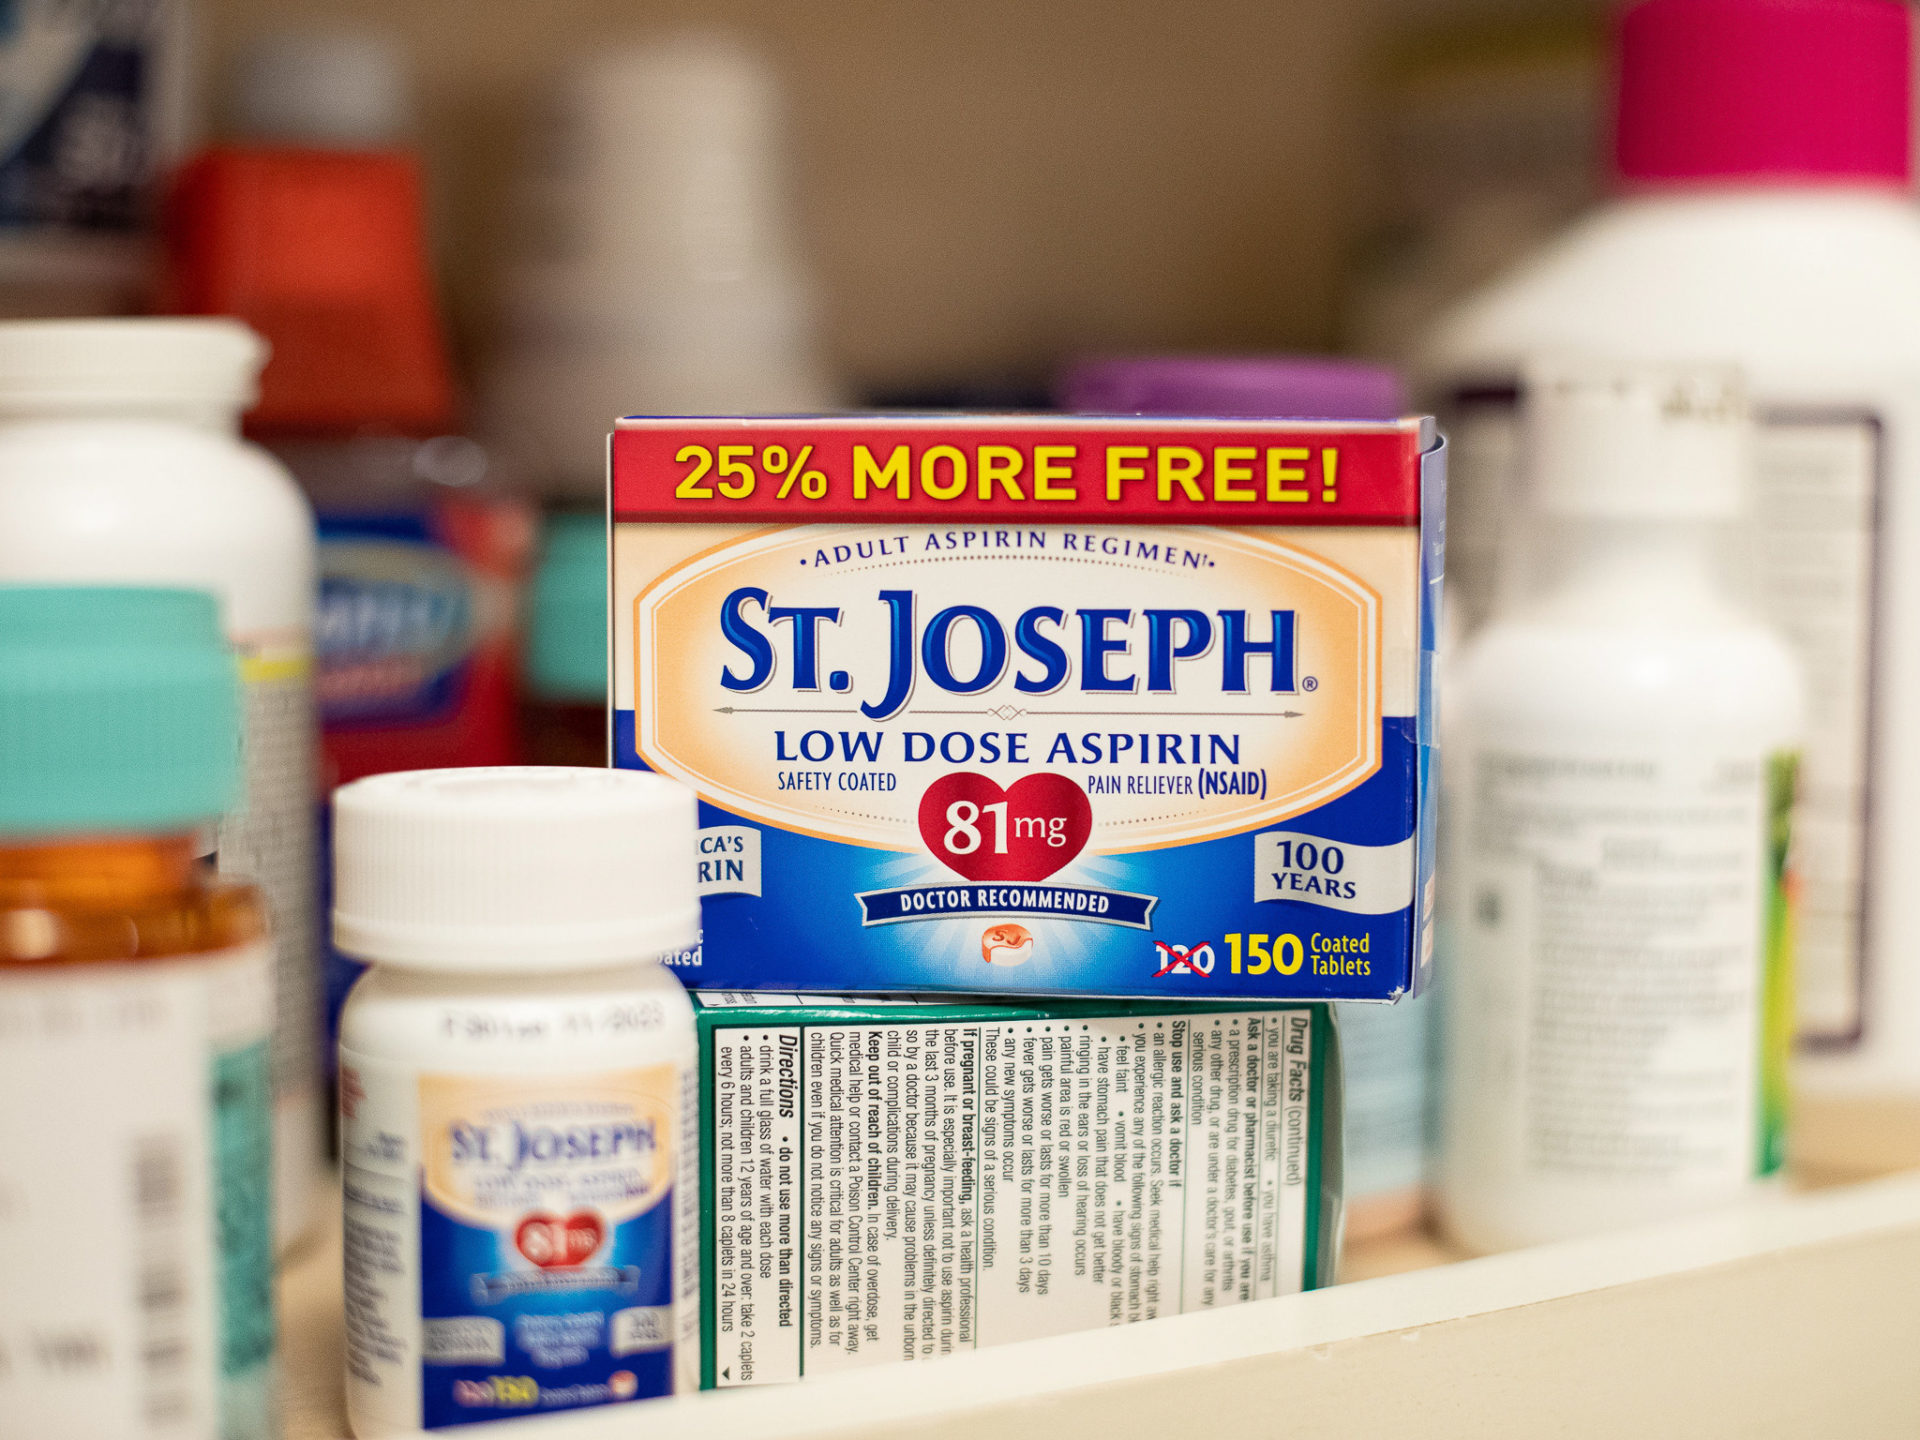 St. Joseph Low Dose Aspirin As Low As $2.49 At Kroger (Regular Price $5.99)